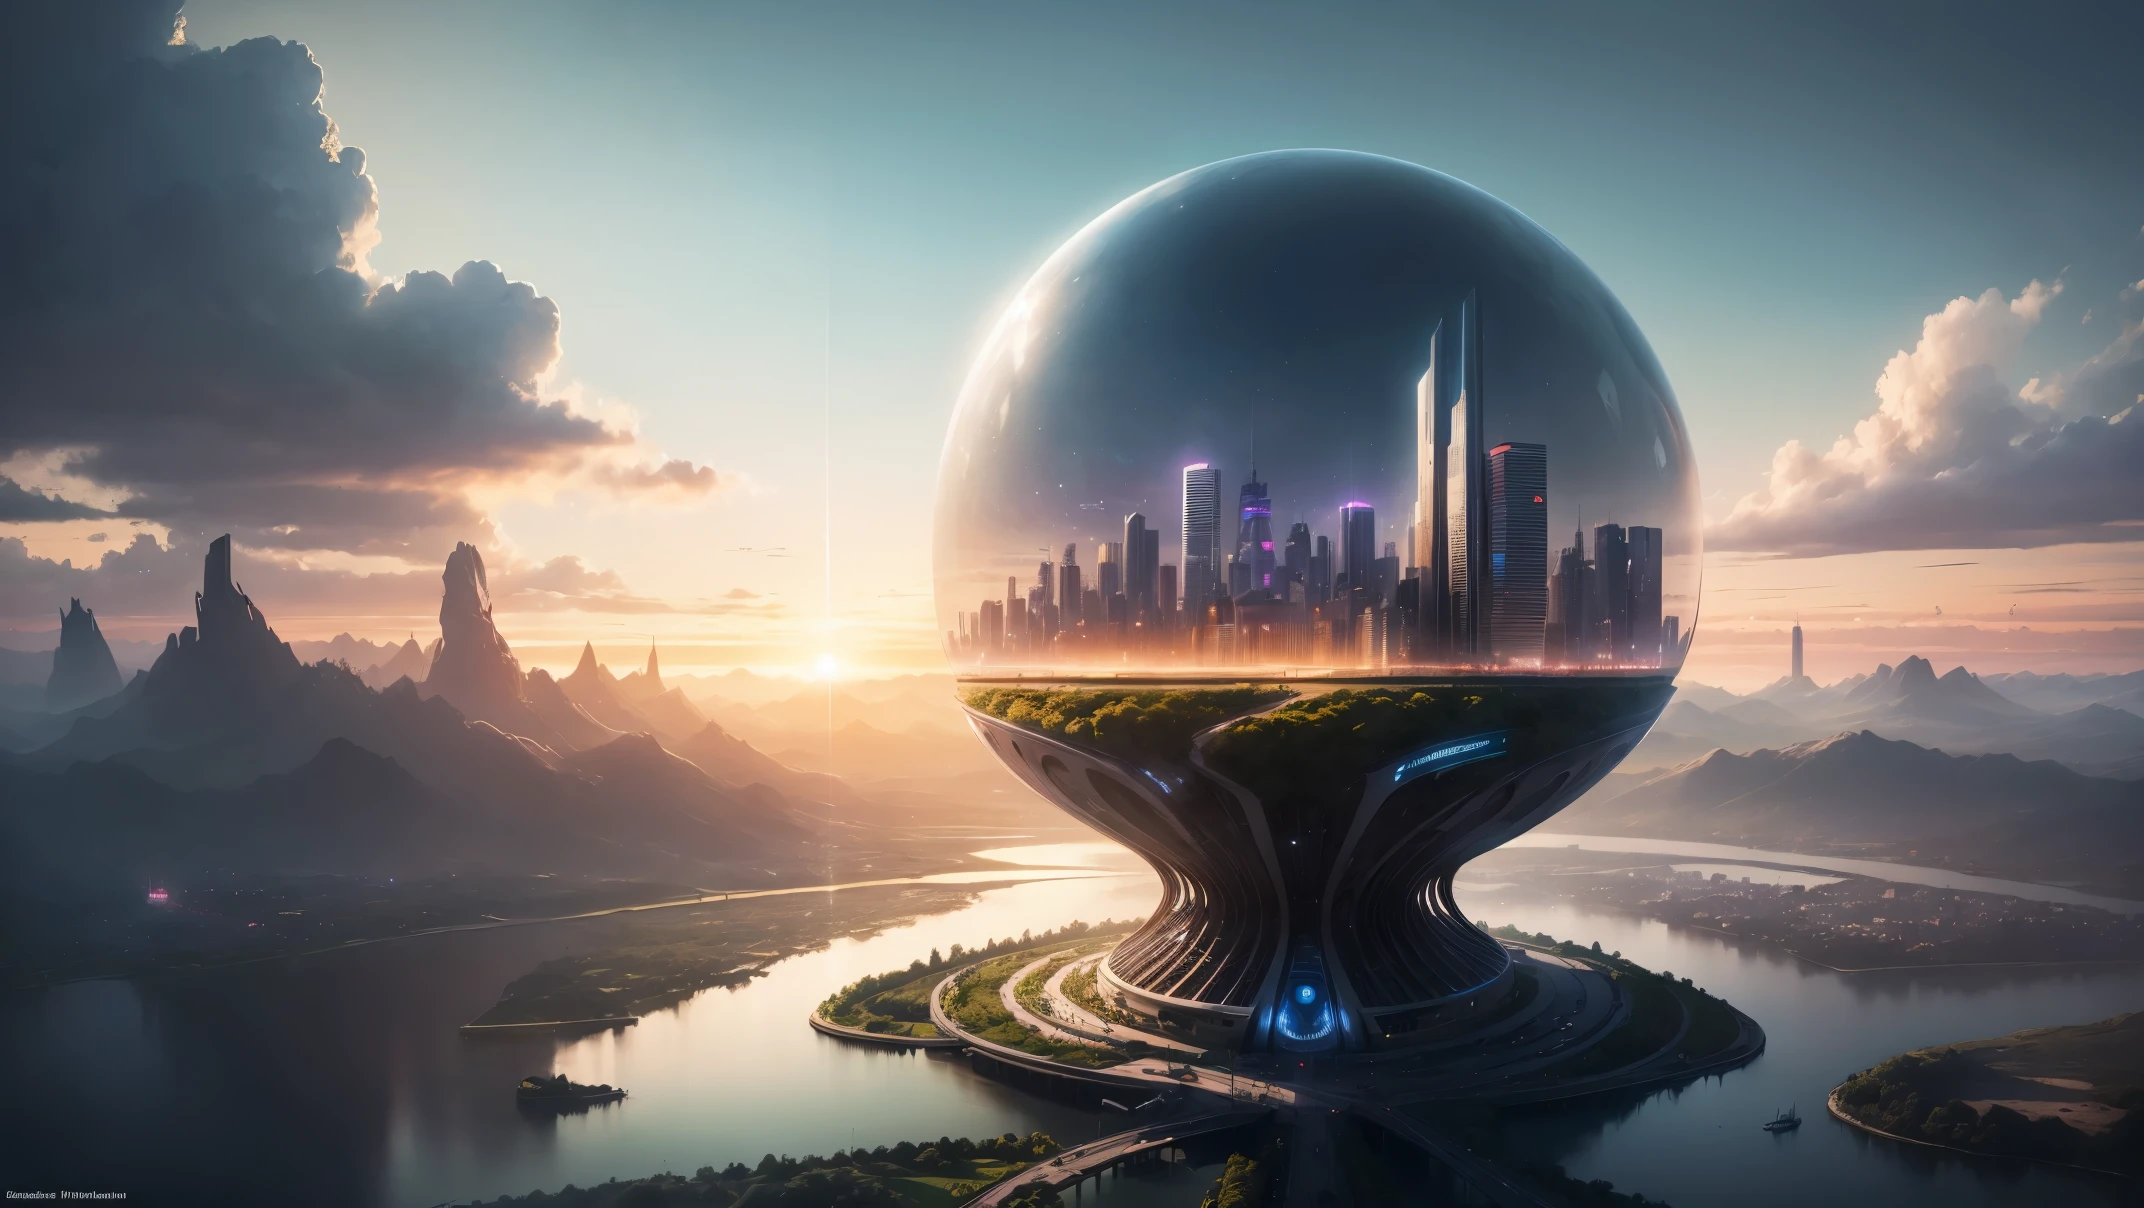 (最好的质量,4k,8千,高分辨率,杰作:1.2),极其详细,(实际的,真实感,照片般逼真:1.37),未来派漂浮天空城市,未来科技,巨大的城市高科技平板平台,飞艇,漂浮在空中,未来城市,周围的小型飞艇,高科技半球形平台,彩灯,先进的架构,伊斯兰建筑,现代建筑,摩天大楼,访问云,风景秀丽,俯瞰城市,令人印象深刻的设计,与自然完美融合,充满活力的氛围,未来交通系统,暂停停车,透明路径,郁郁葱葱的绿色植物,空中花园,瀑布,壮丽的天际线,水面上的倒影,波光粼粼的河流,建筑创新,futuristic 摩天大楼s,透明穹顶,该建筑的形状很不寻常,高架行人道,令人印象深刻的天际线,发光的灯光,未来科技,简约设计,风景名胜区,全景,穿云塔,鲜艳的色彩,史诗般的日出,史诗般的日落,炫目的灯光显示,神奇的氛围,未来城市,城市乌托邦,奢华生活方式,创新能源,可持续发展,智慧城市技术,先进的基础设施,宁静的气氛,自然与科技和谐相处,令人惊叹的城市景观,前所未有的城市规划,建筑与自然无缝衔接,高科技大都市,尖端工程奇迹,城市生活的未来,富有远见的建筑理念,节能建筑,与环境和谐相处,漂浮在云层之上的城市,乌托邦梦想照进现实,可能性是无止境,先进的交通网络,绿色能源整合,创新材料,令人印象深刻的全息显示,先进的通讯系统,令人惊叹的鸟瞰图,安静祥和的环境,现代主义美学,空灵之美